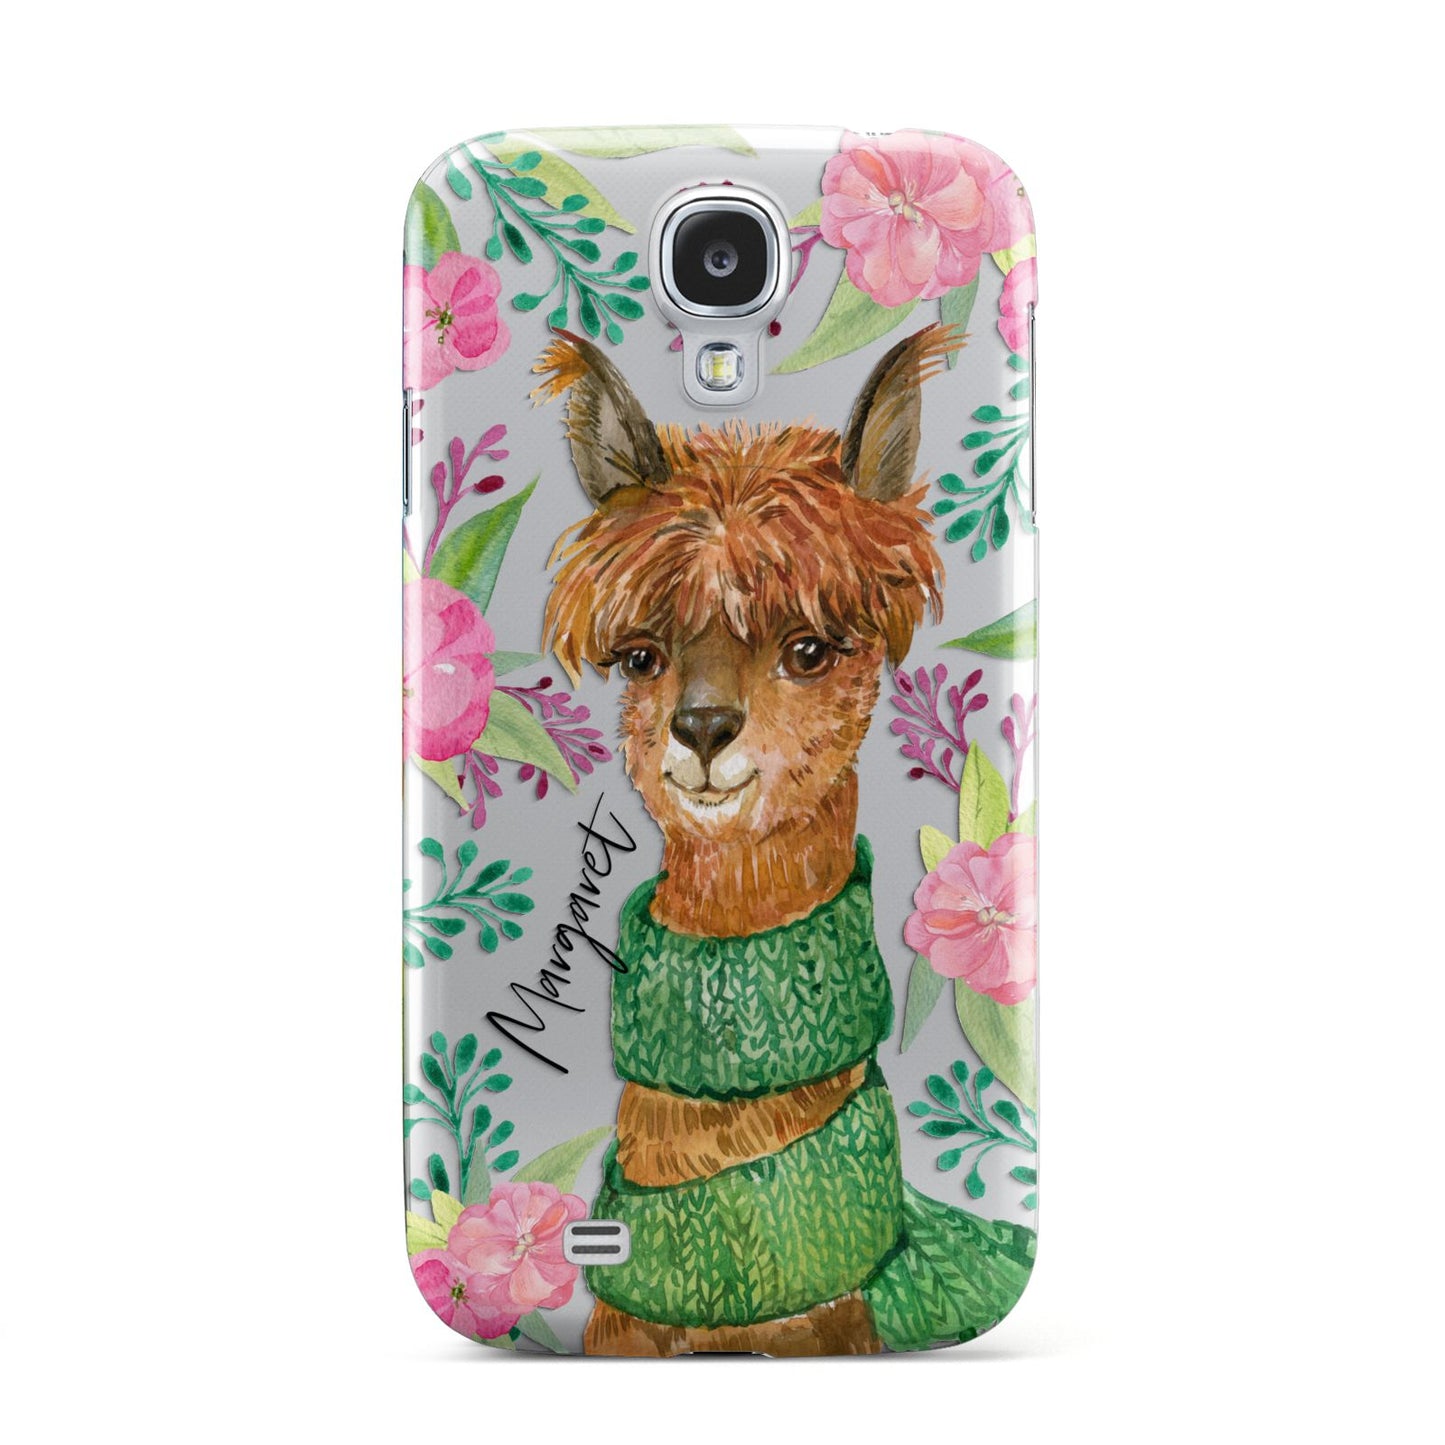 Personalised Alpaca Samsung Galaxy S4 Case